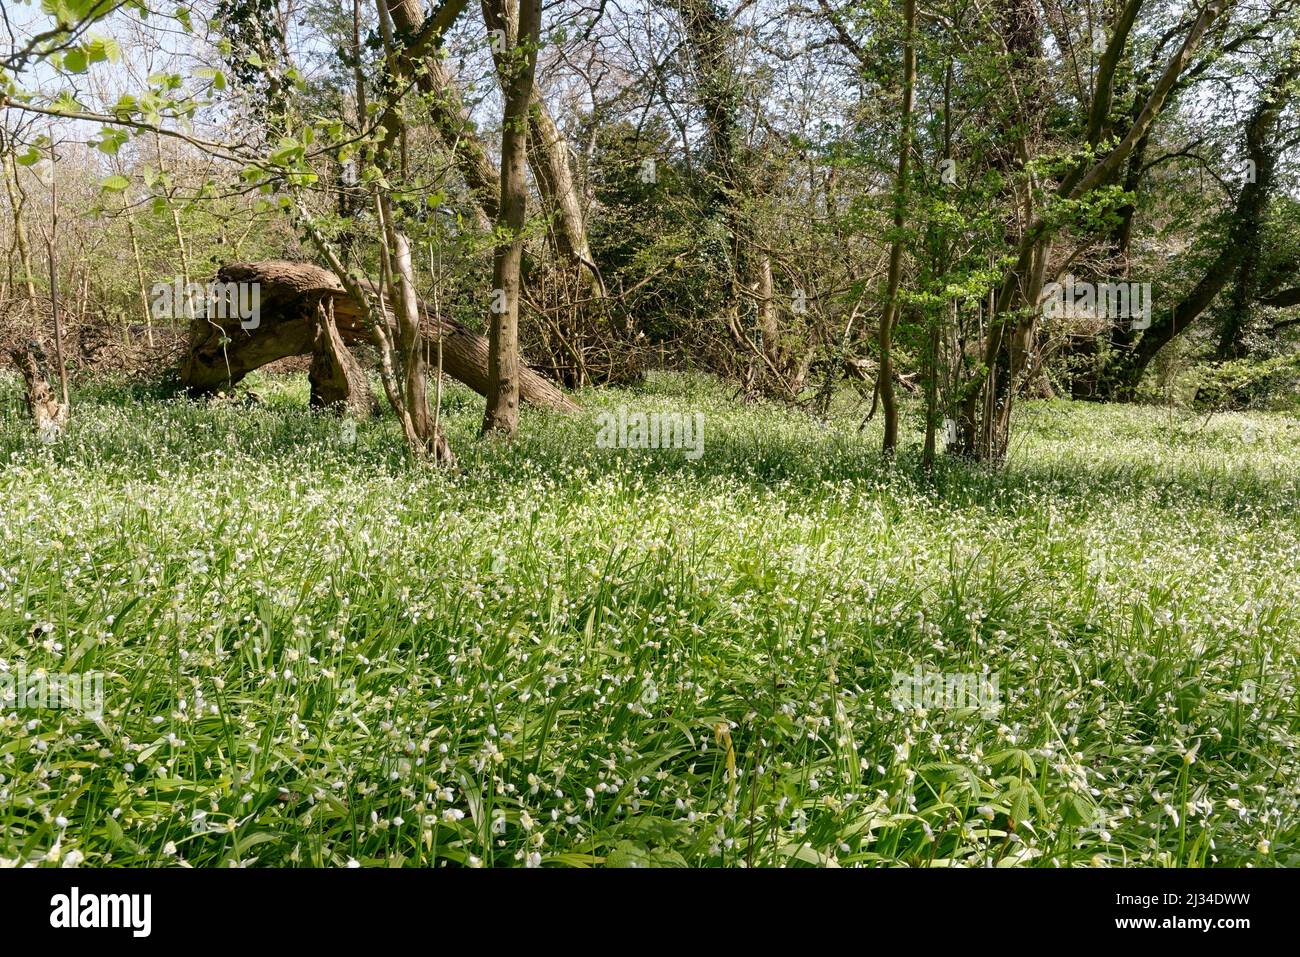 Leek a fiore ridotto (Allium paradoxum) una specie altamente invasiva, che cresce in un denso tappeto soffocante nel bosco, Claverton Down, Bath, UK, aprile. Foto Stock